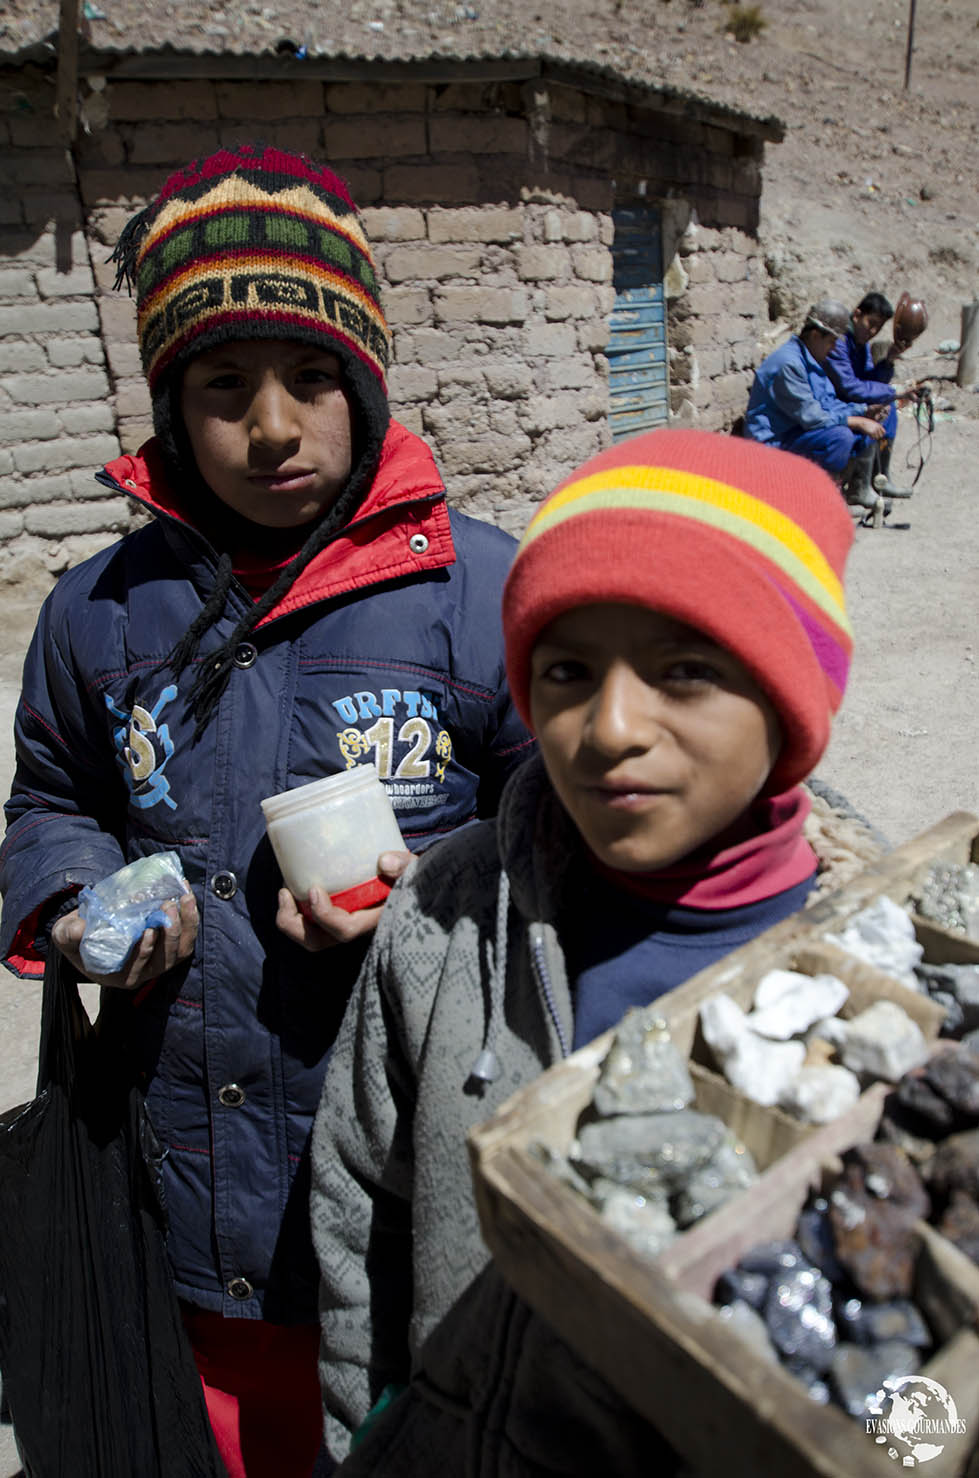 Visite d'une mine de Potosi en Bolivie